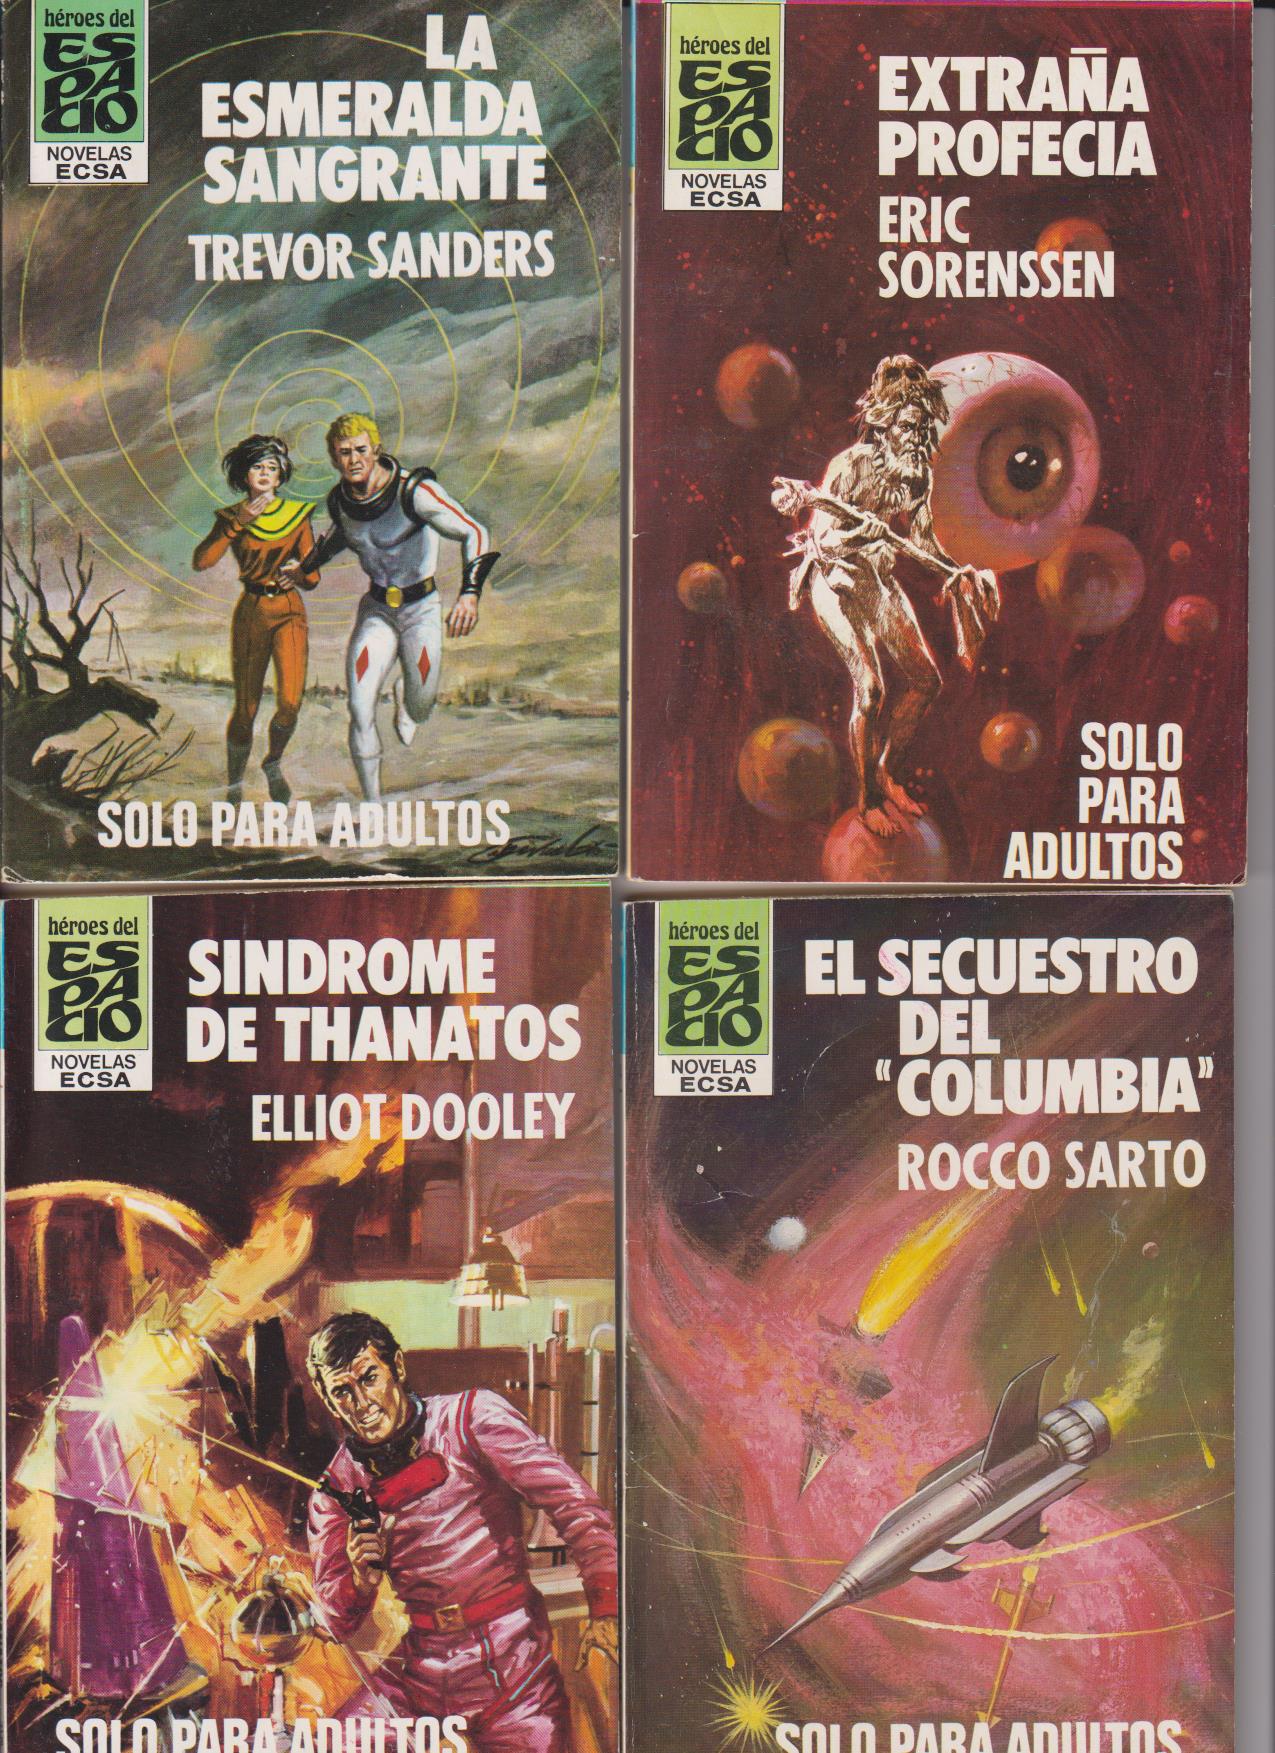 Héroes del Espacio. Lote de 4 ejemplares: 63, 68, 72 y74. Ceres